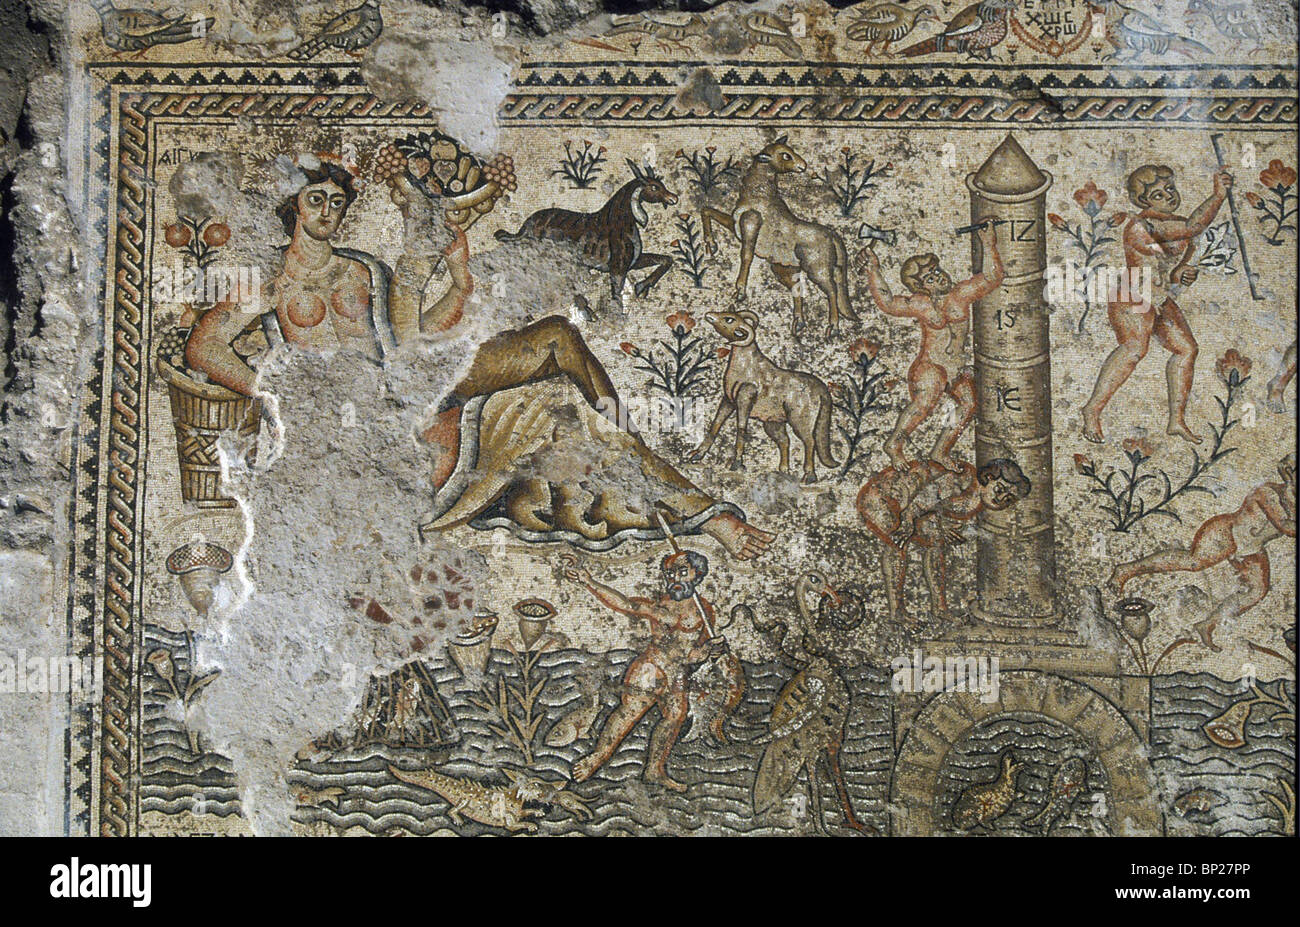 SEPPHORIS sol de mosaïque À PARTIR D'UN LA FIN DE L'édifice romain datant du 5ème. C. A.D. DÉTAIL DE L'angle supérieur gauche montrant une femme Banque D'Images